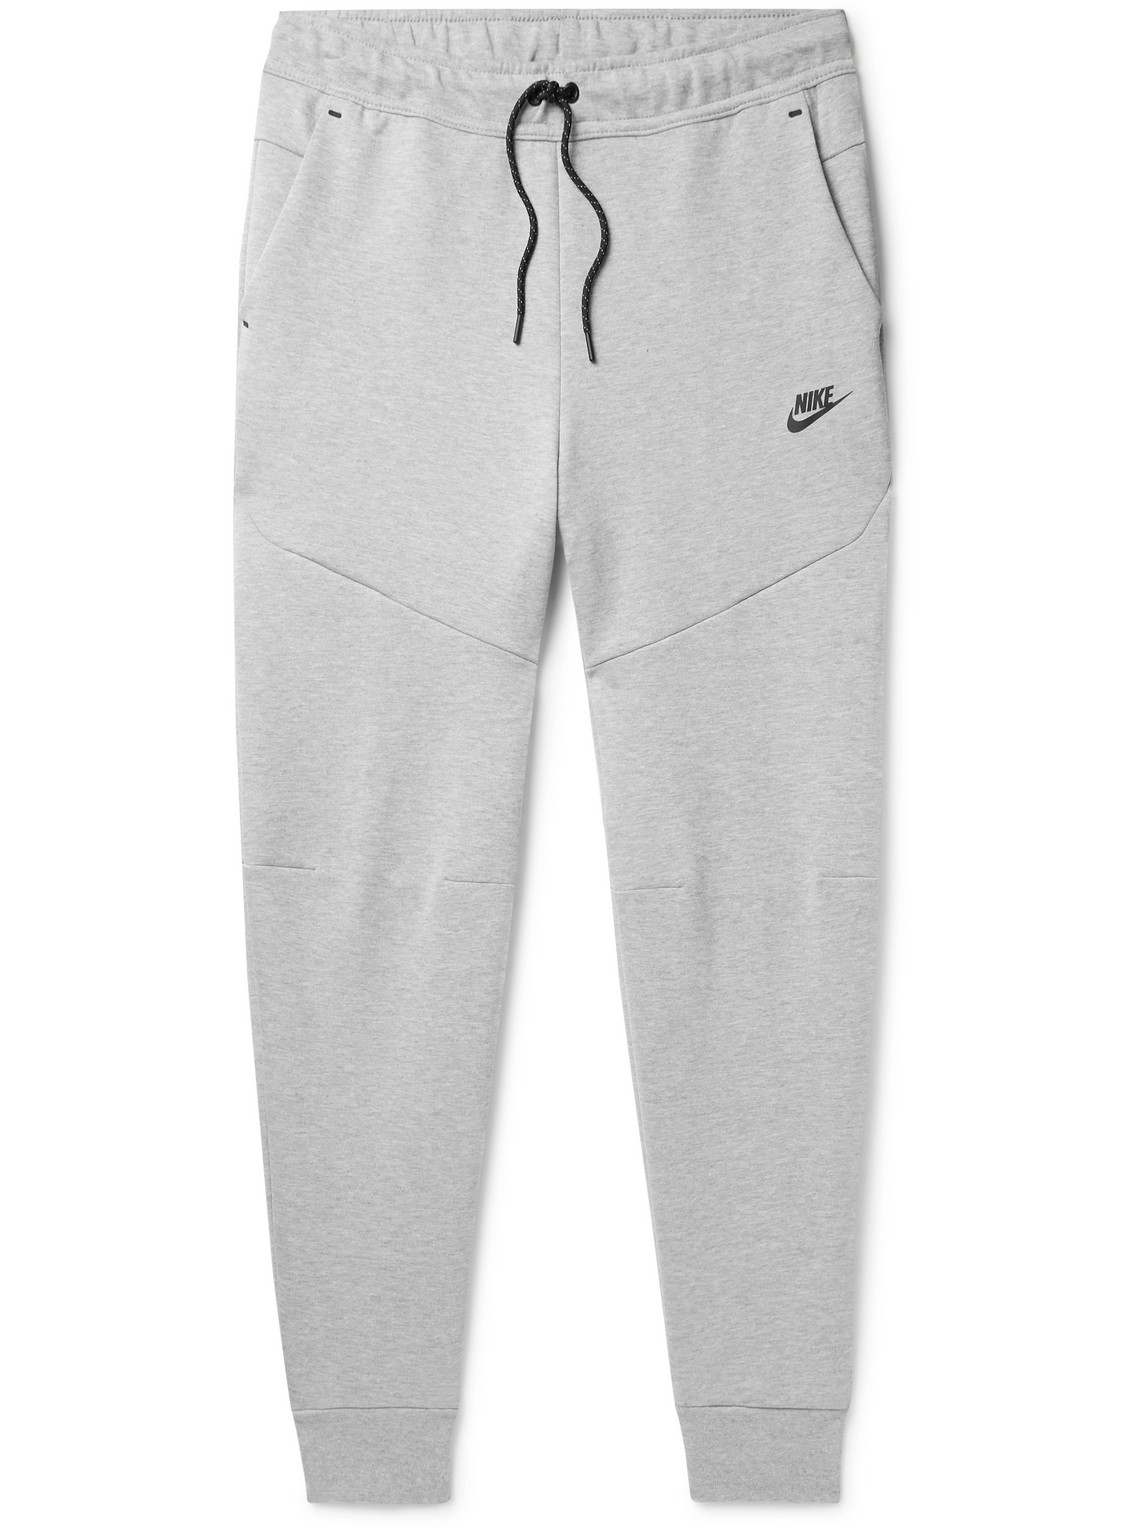 Nike - Sportswear Tapered Logo-Print Cotton-Blend Tech-Fleece Sweatpants -  Men - Gray - XL pour hommes